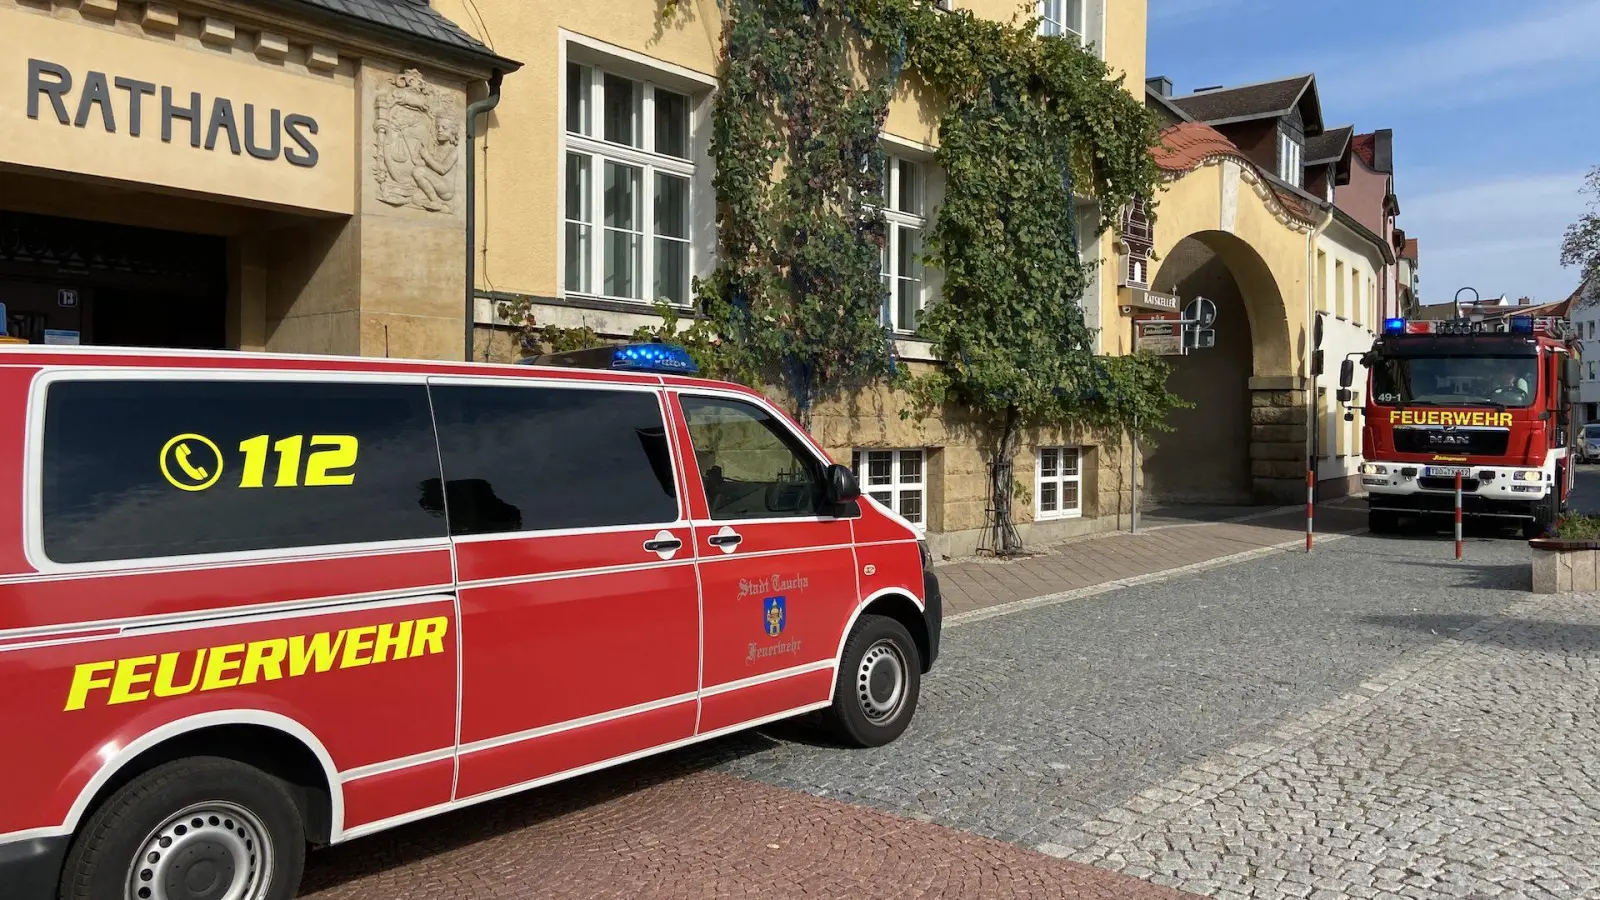 Feuerwehr-Einsatz im Tauchaer Rathaus (Foto: taucha-kompakt.de)